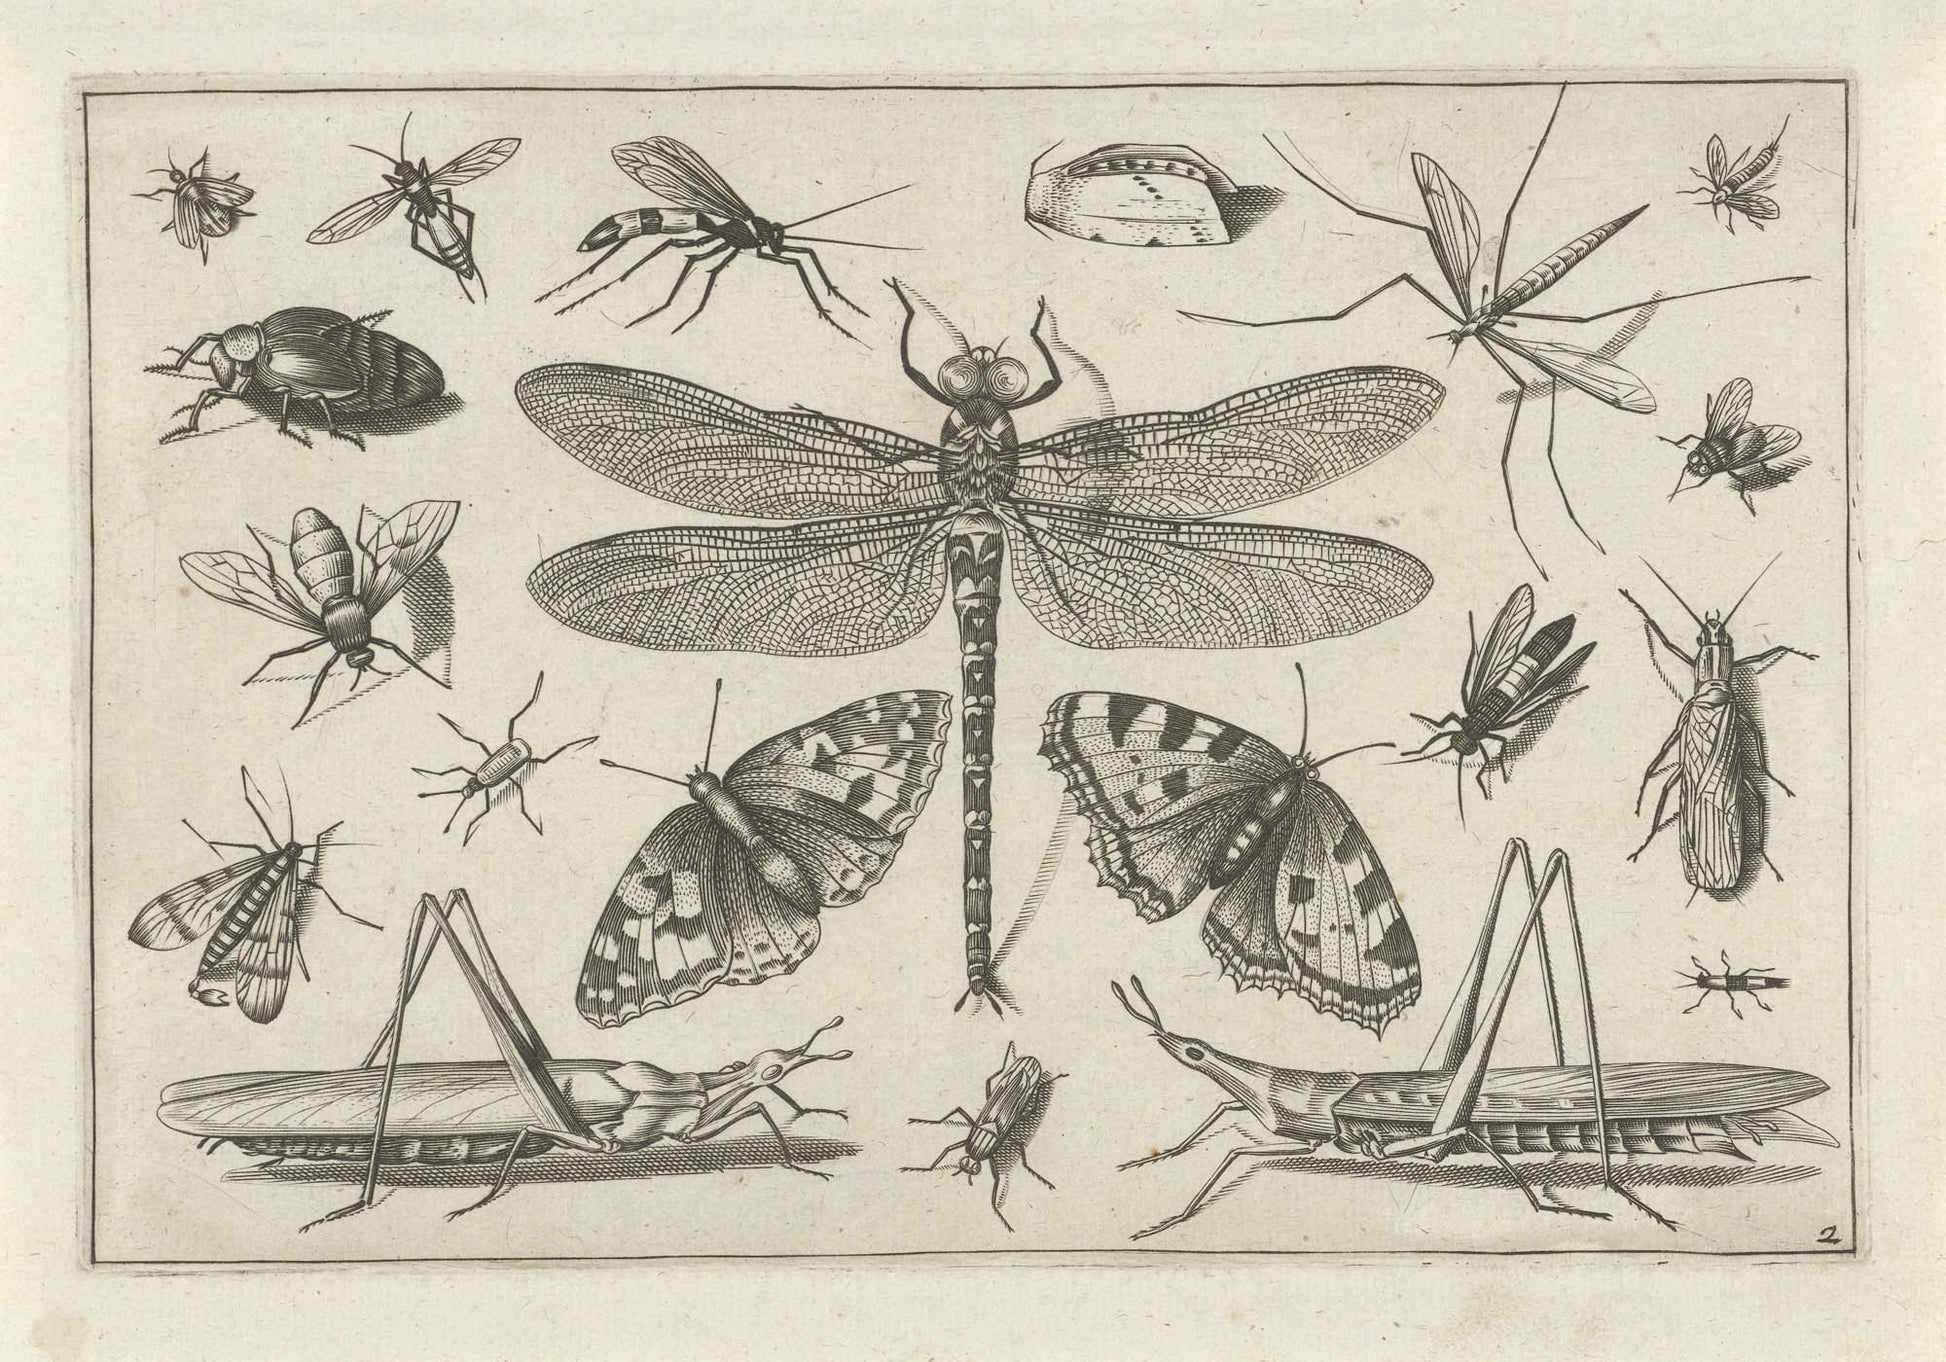 Insects, Vintage Illustration Framed Print - USTAD HOME